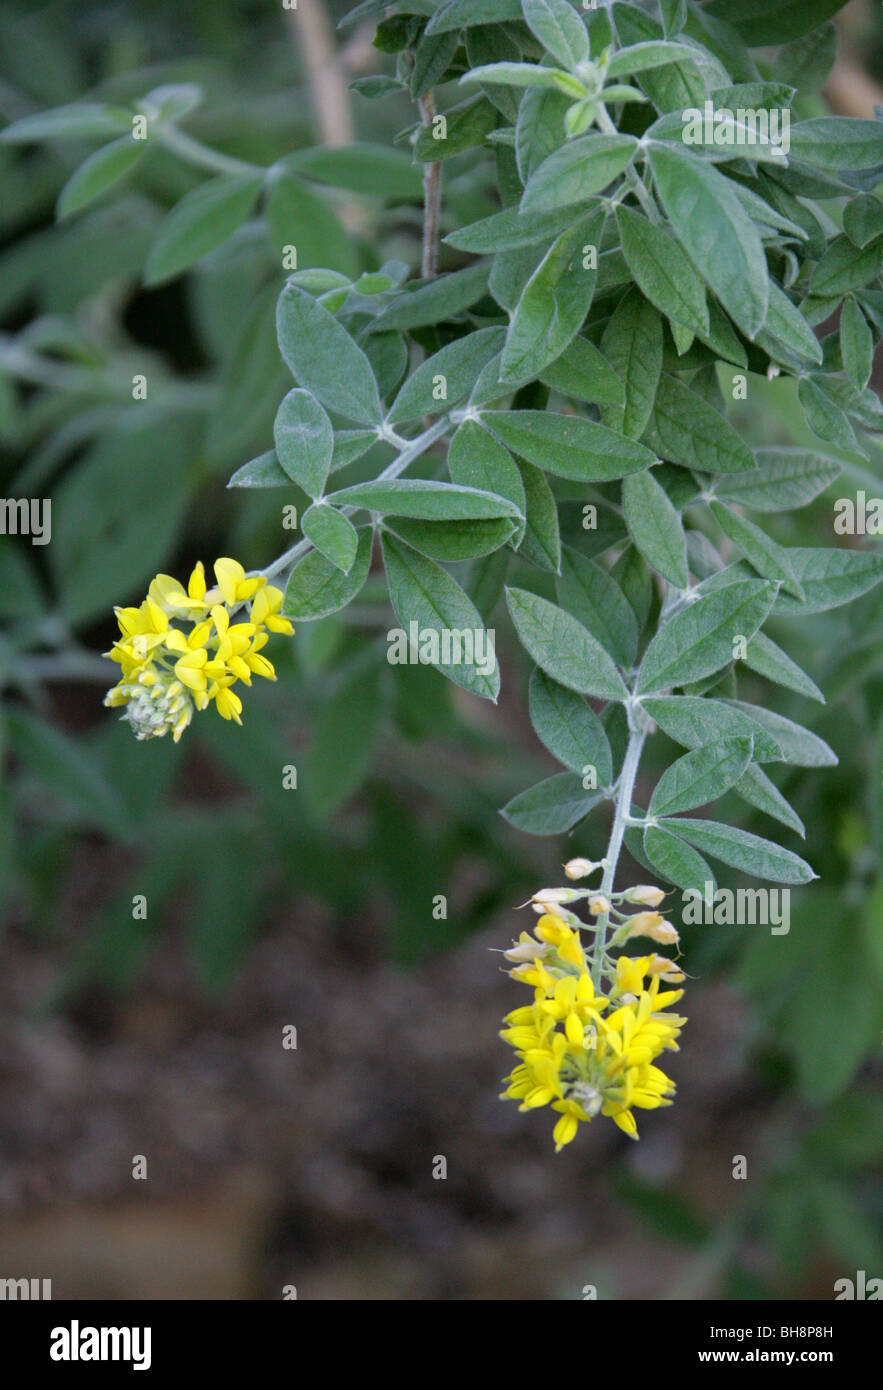 Rivasgodaya nervosa, syn Teline nervosa, Fabaceae (Leguminosae), Gran Canaria Isole Canarie. Una rara vegetale minacciata. Foto Stock